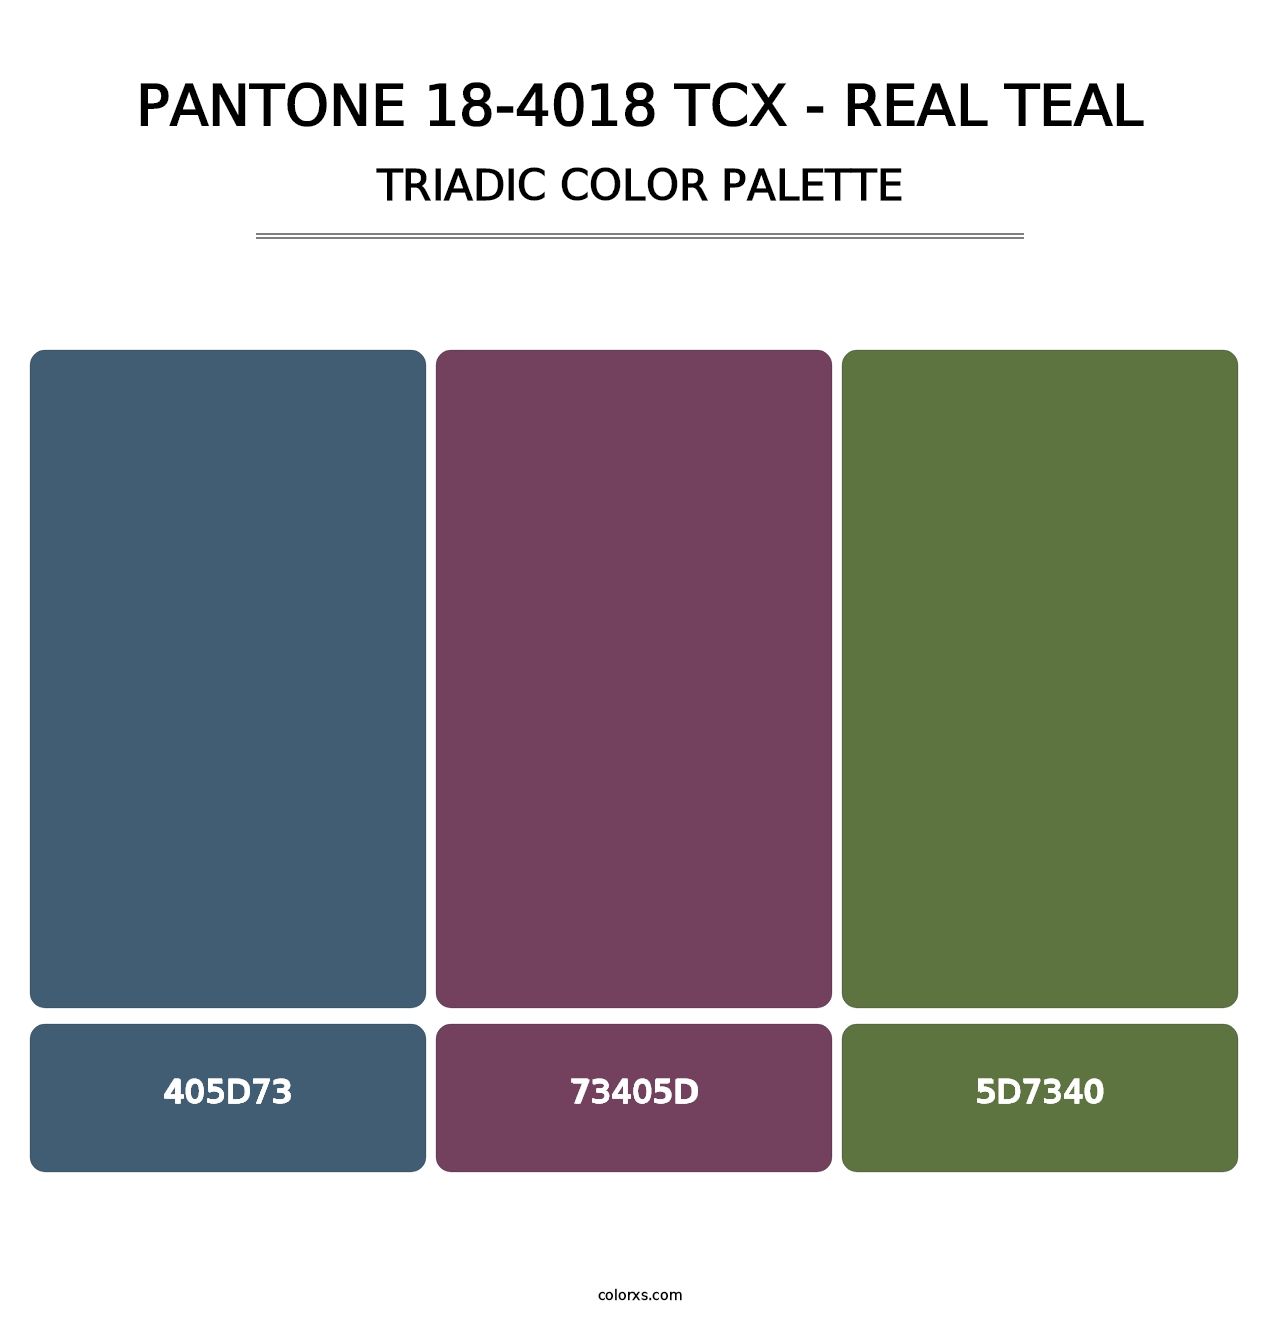 PANTONE 18-4018 TCX - Real Teal - Triadic Color Palette